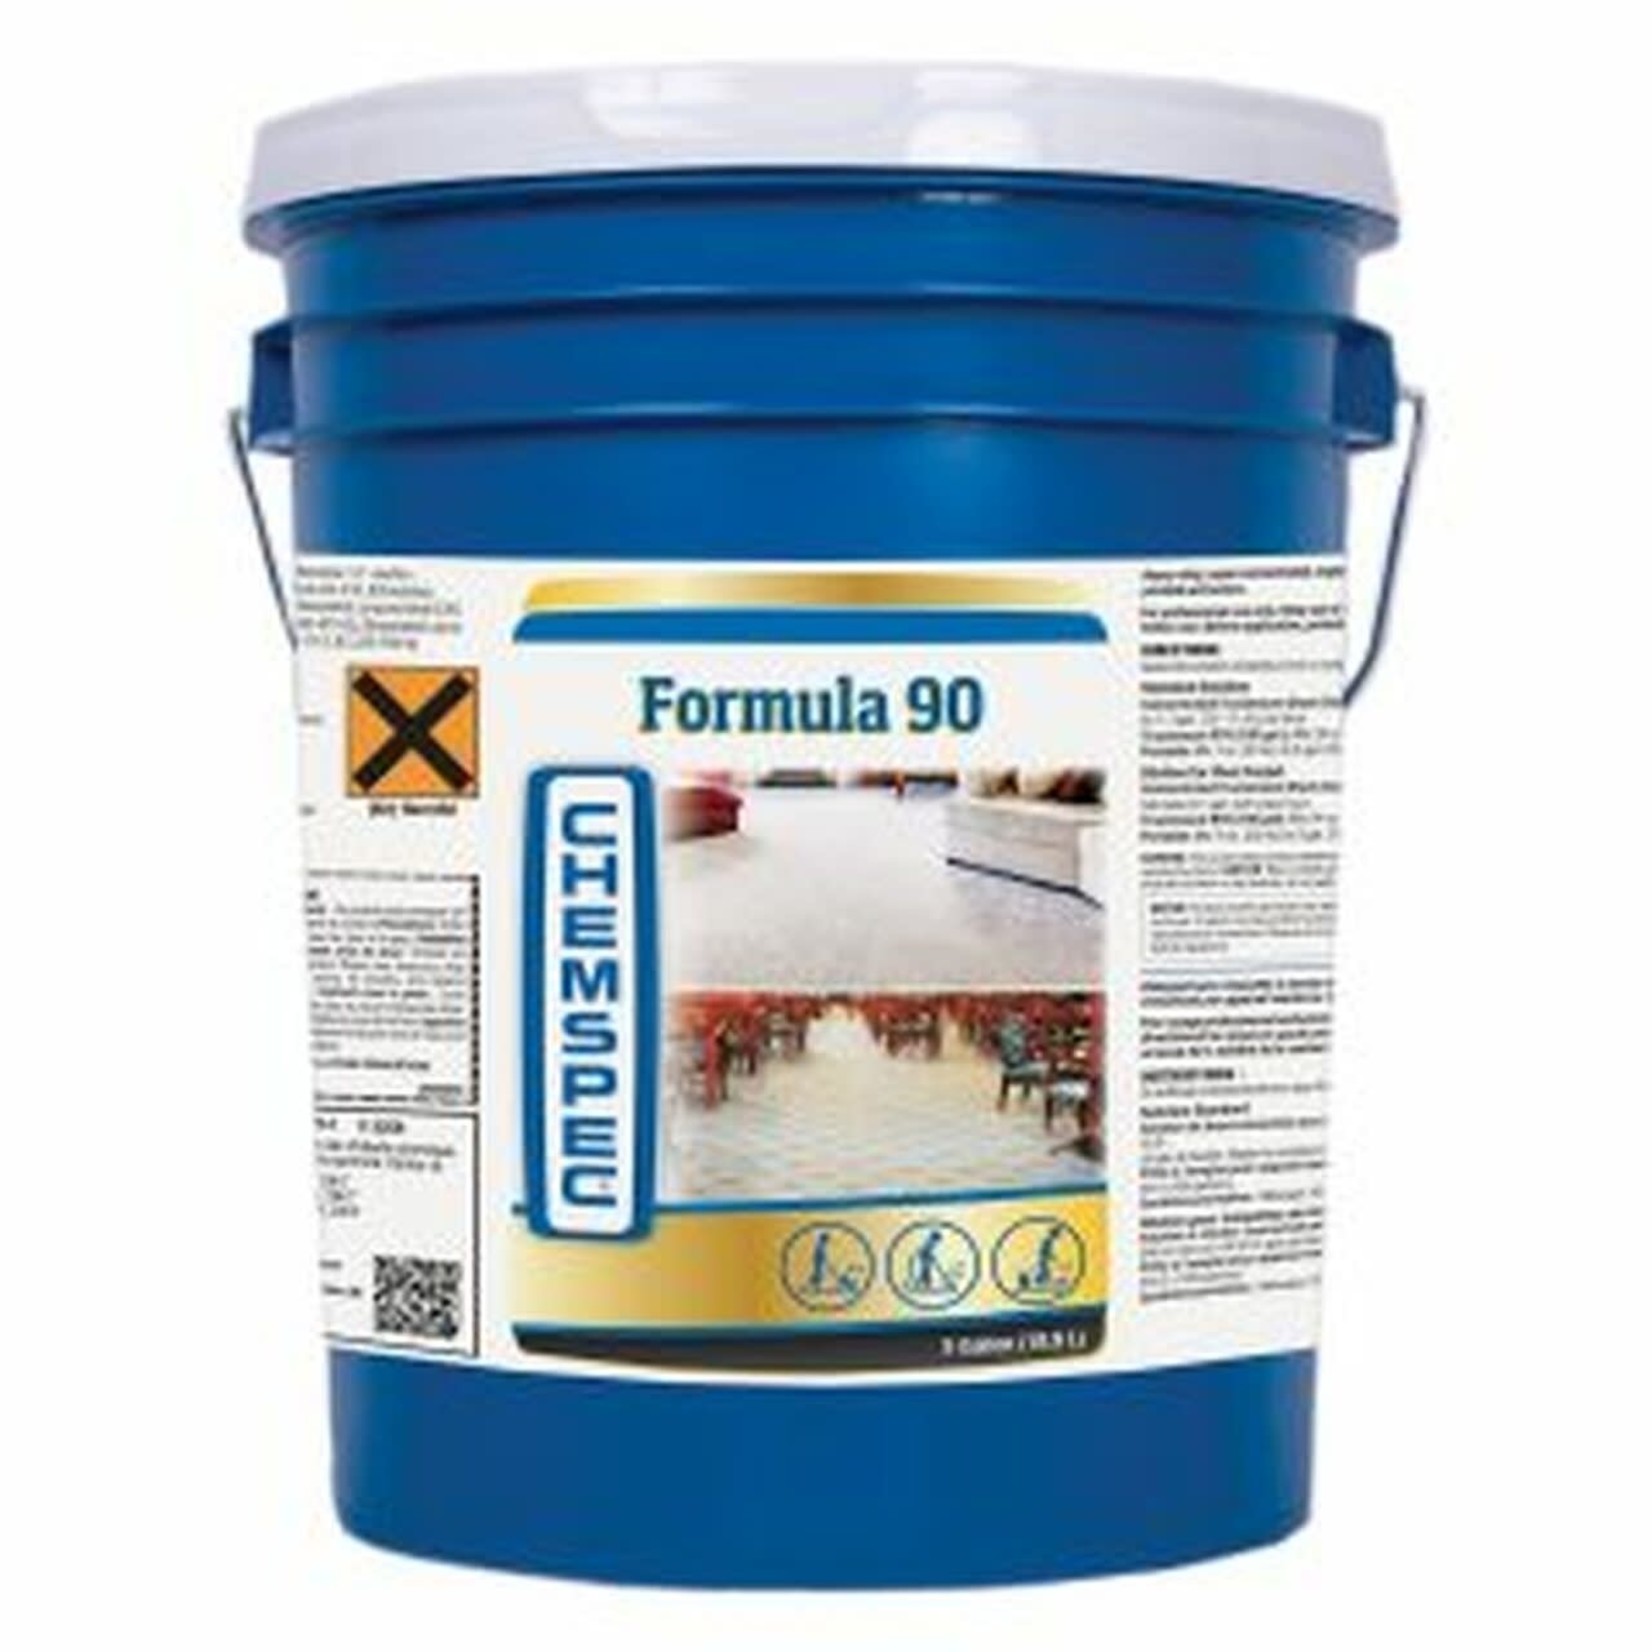 Chemspec Formula 90 Liquid 5 Gallon